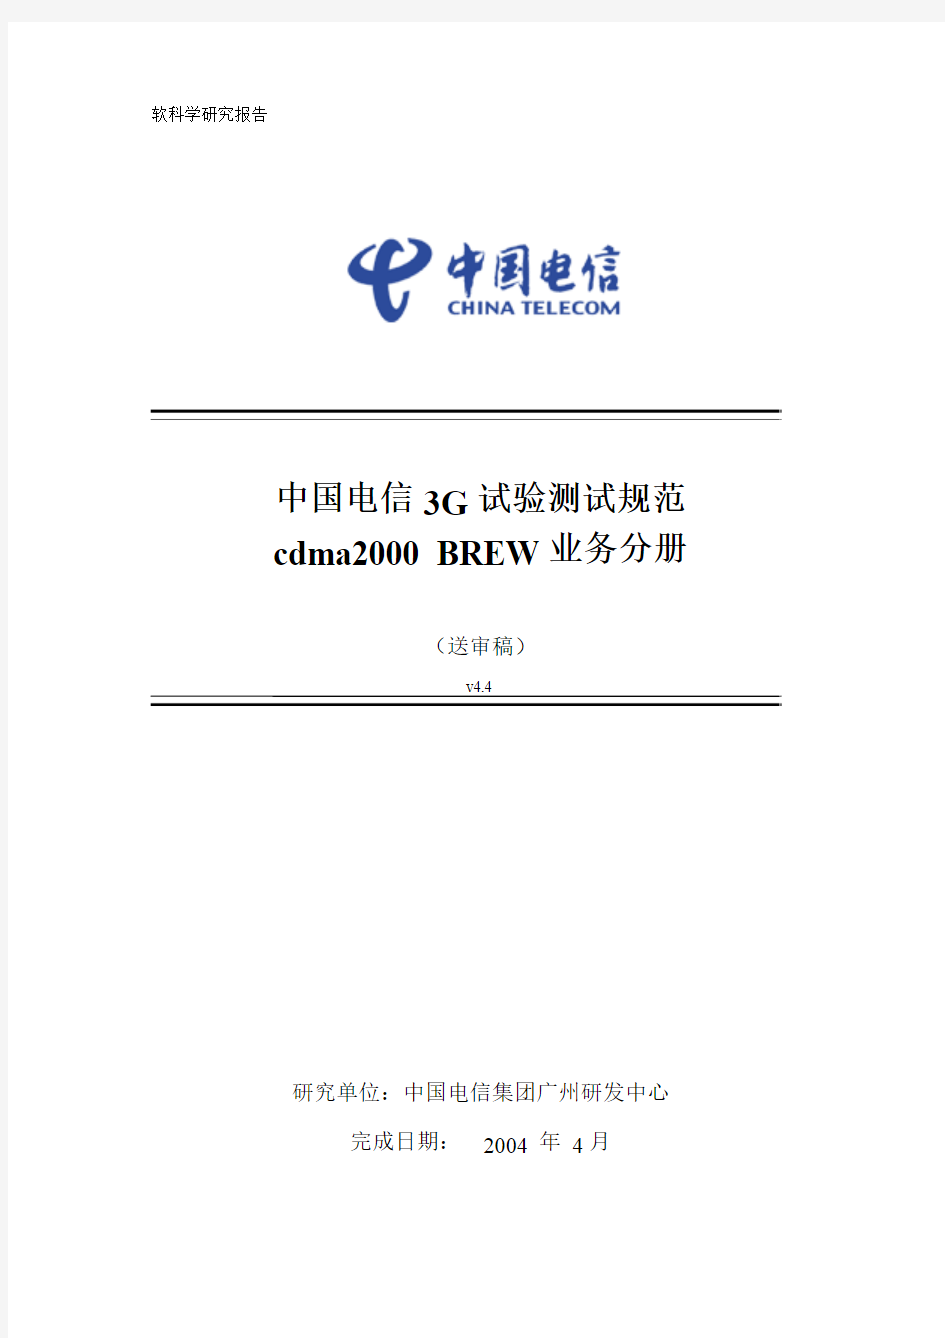 中国电信3G试验测试规范-cdma2000_BREW业务分册V4.4